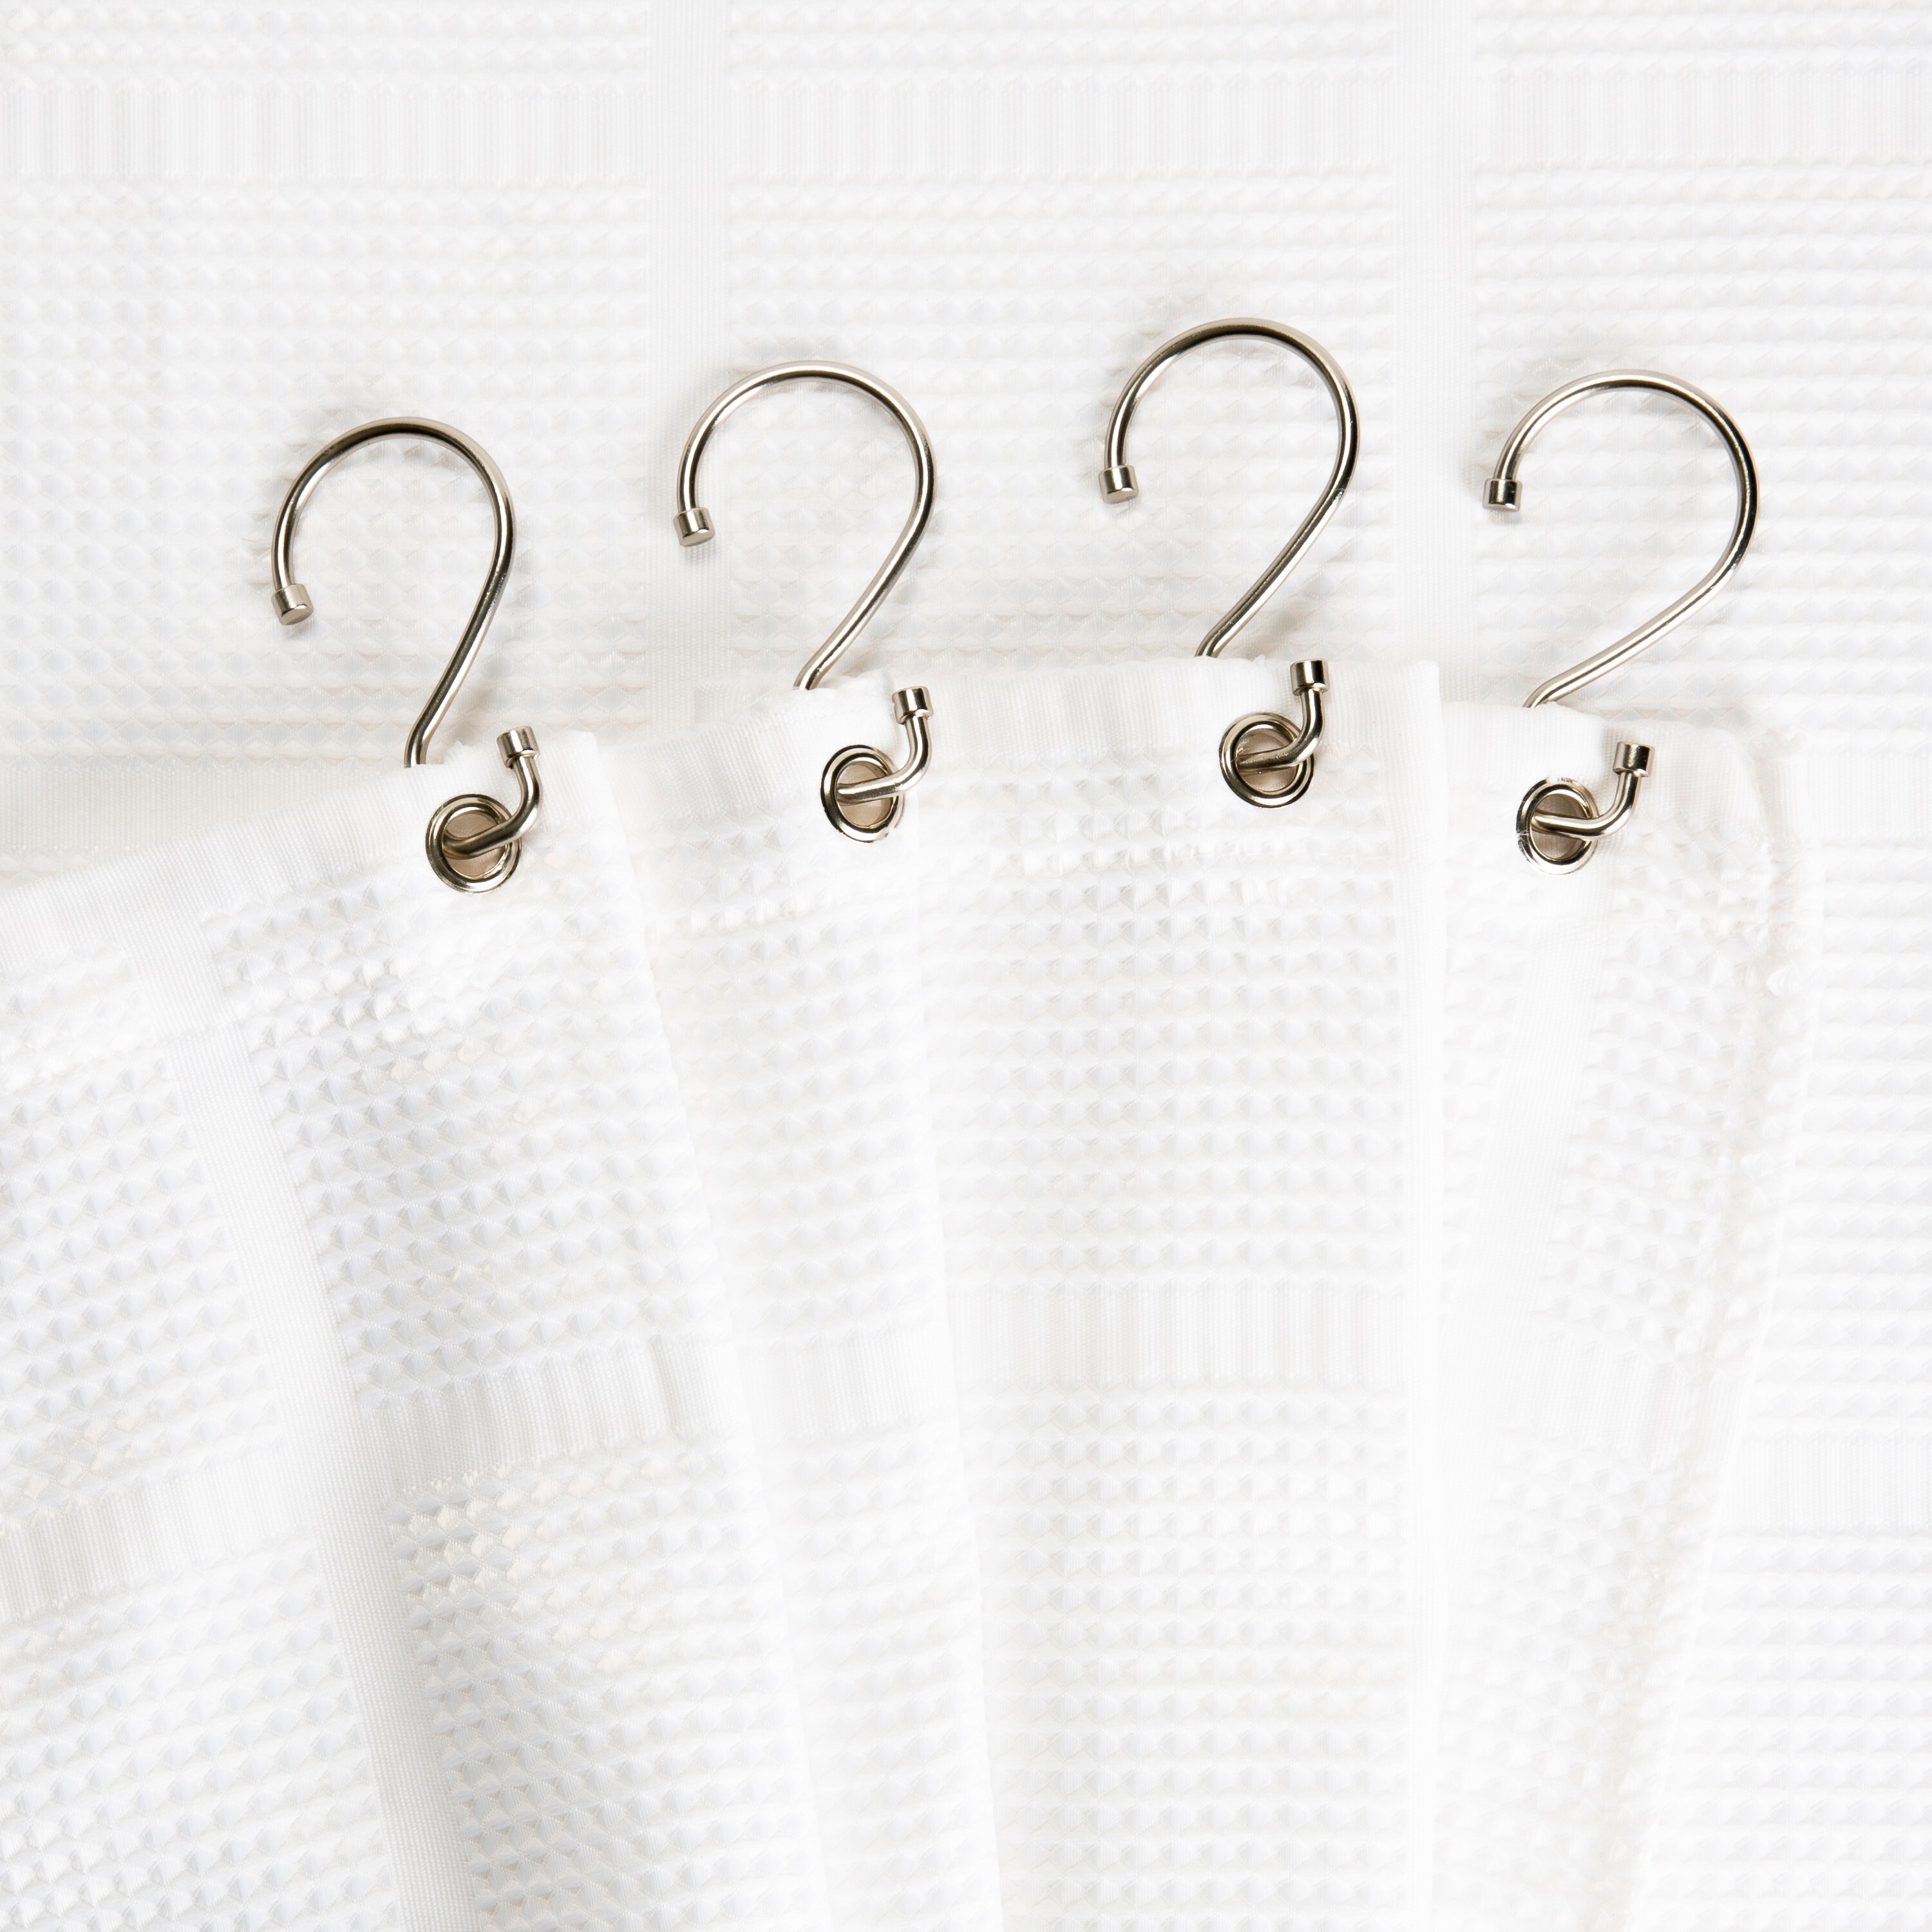 White Shower Curtain Rings, Pack of 12, White Shower Curtain Hooks